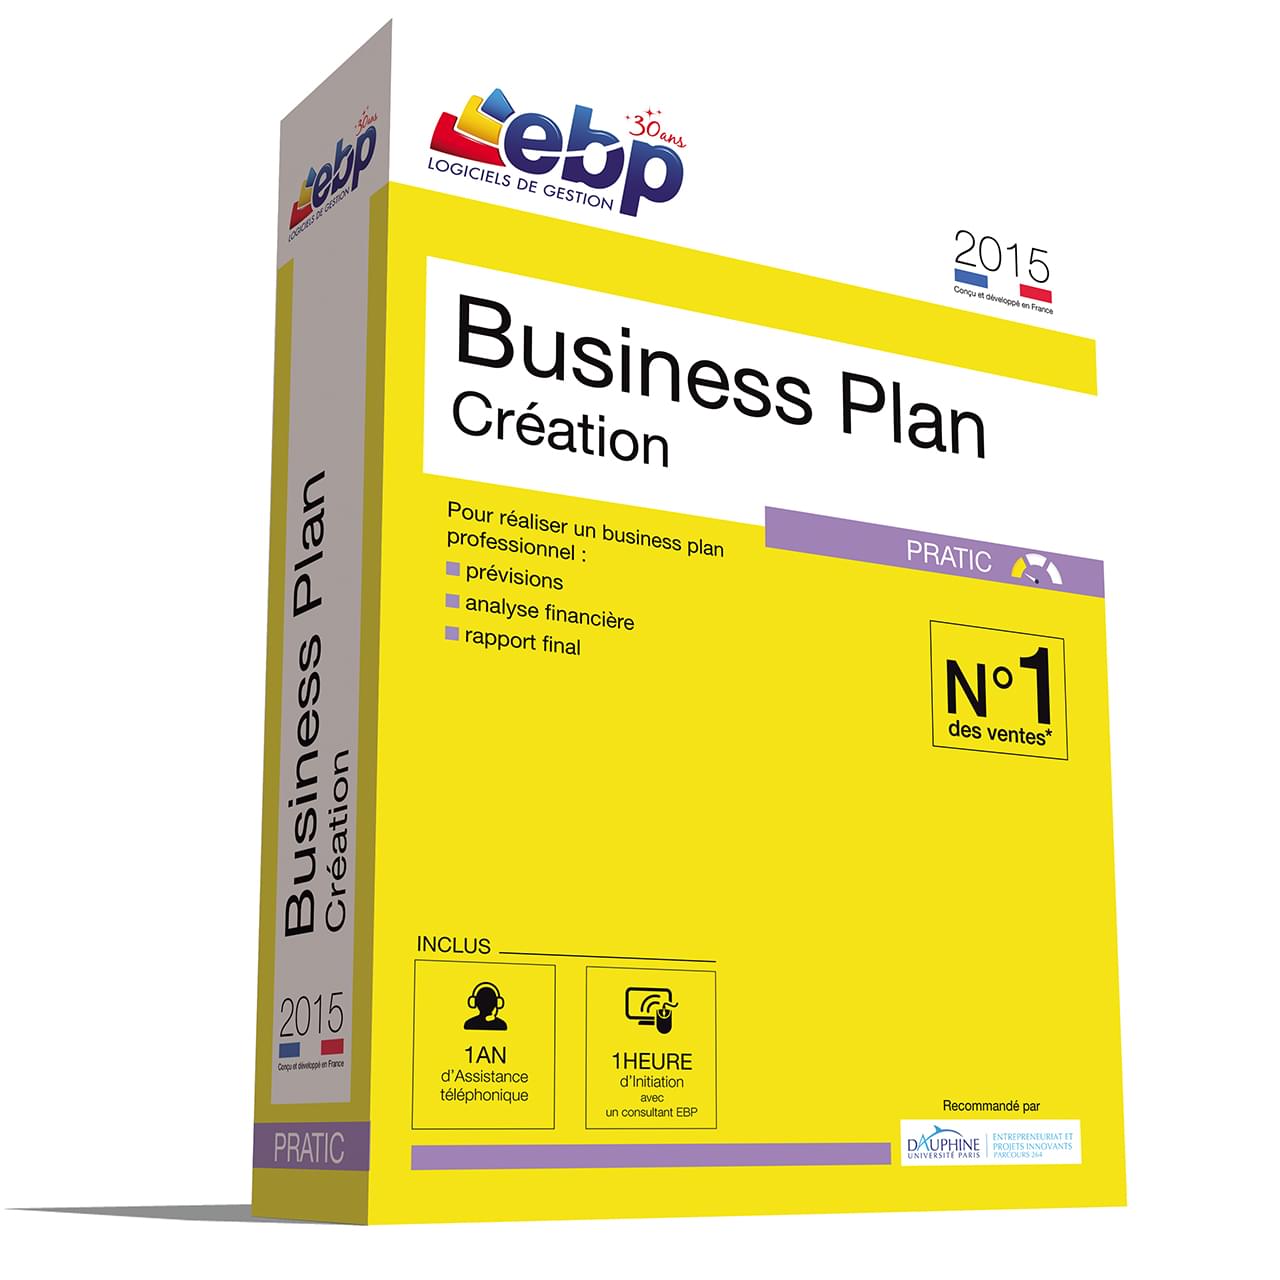 Logiciel application EBP Business Plan Pratic 2015 + VIP